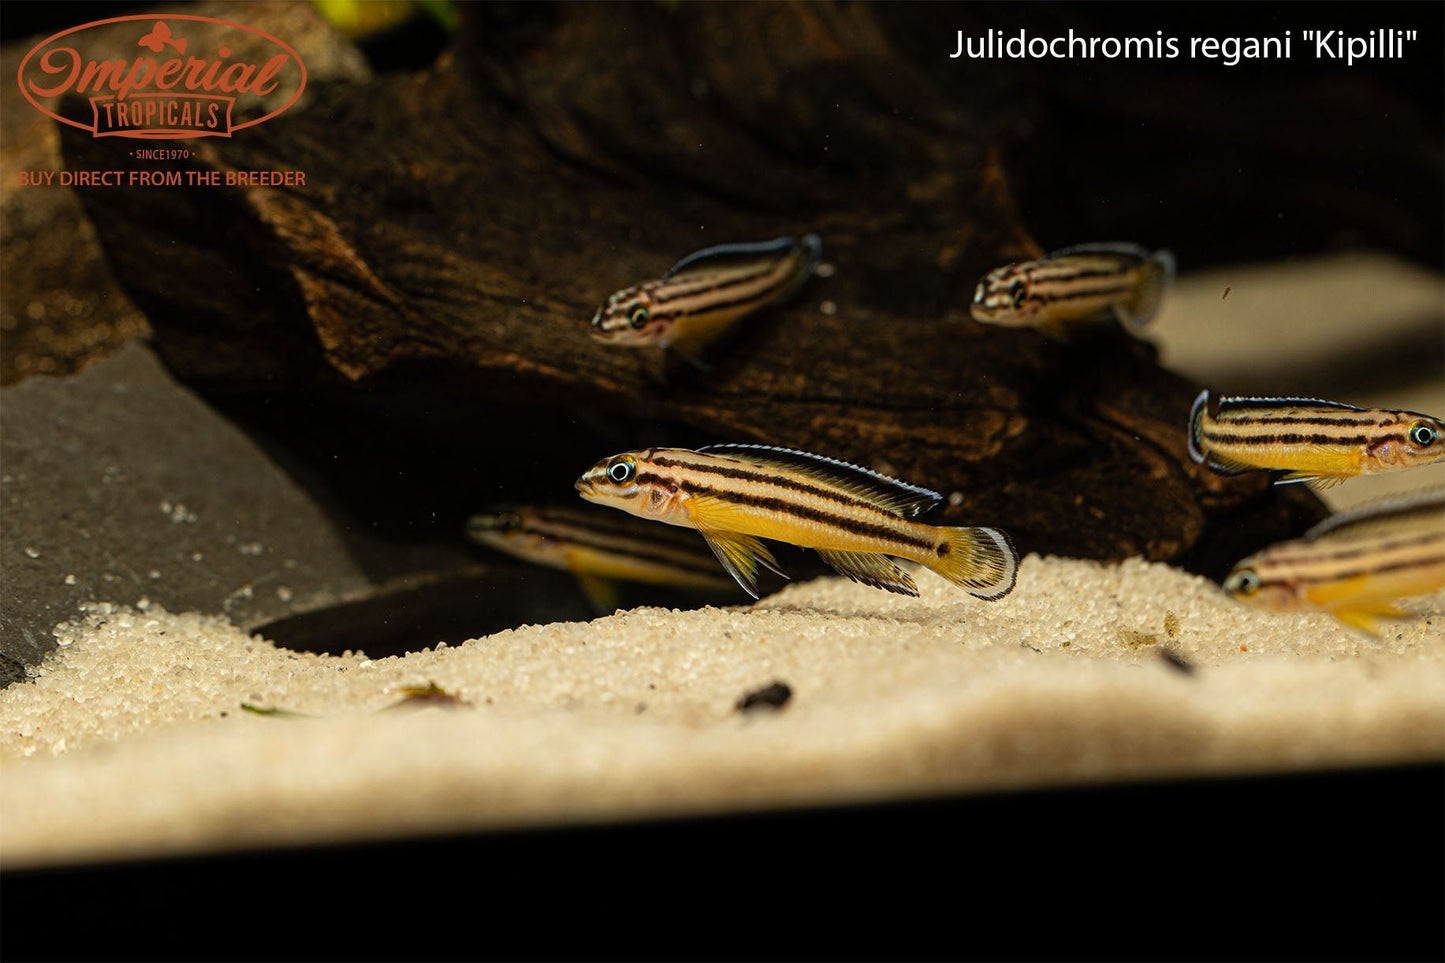 Julidochromis regani "Kipilli"